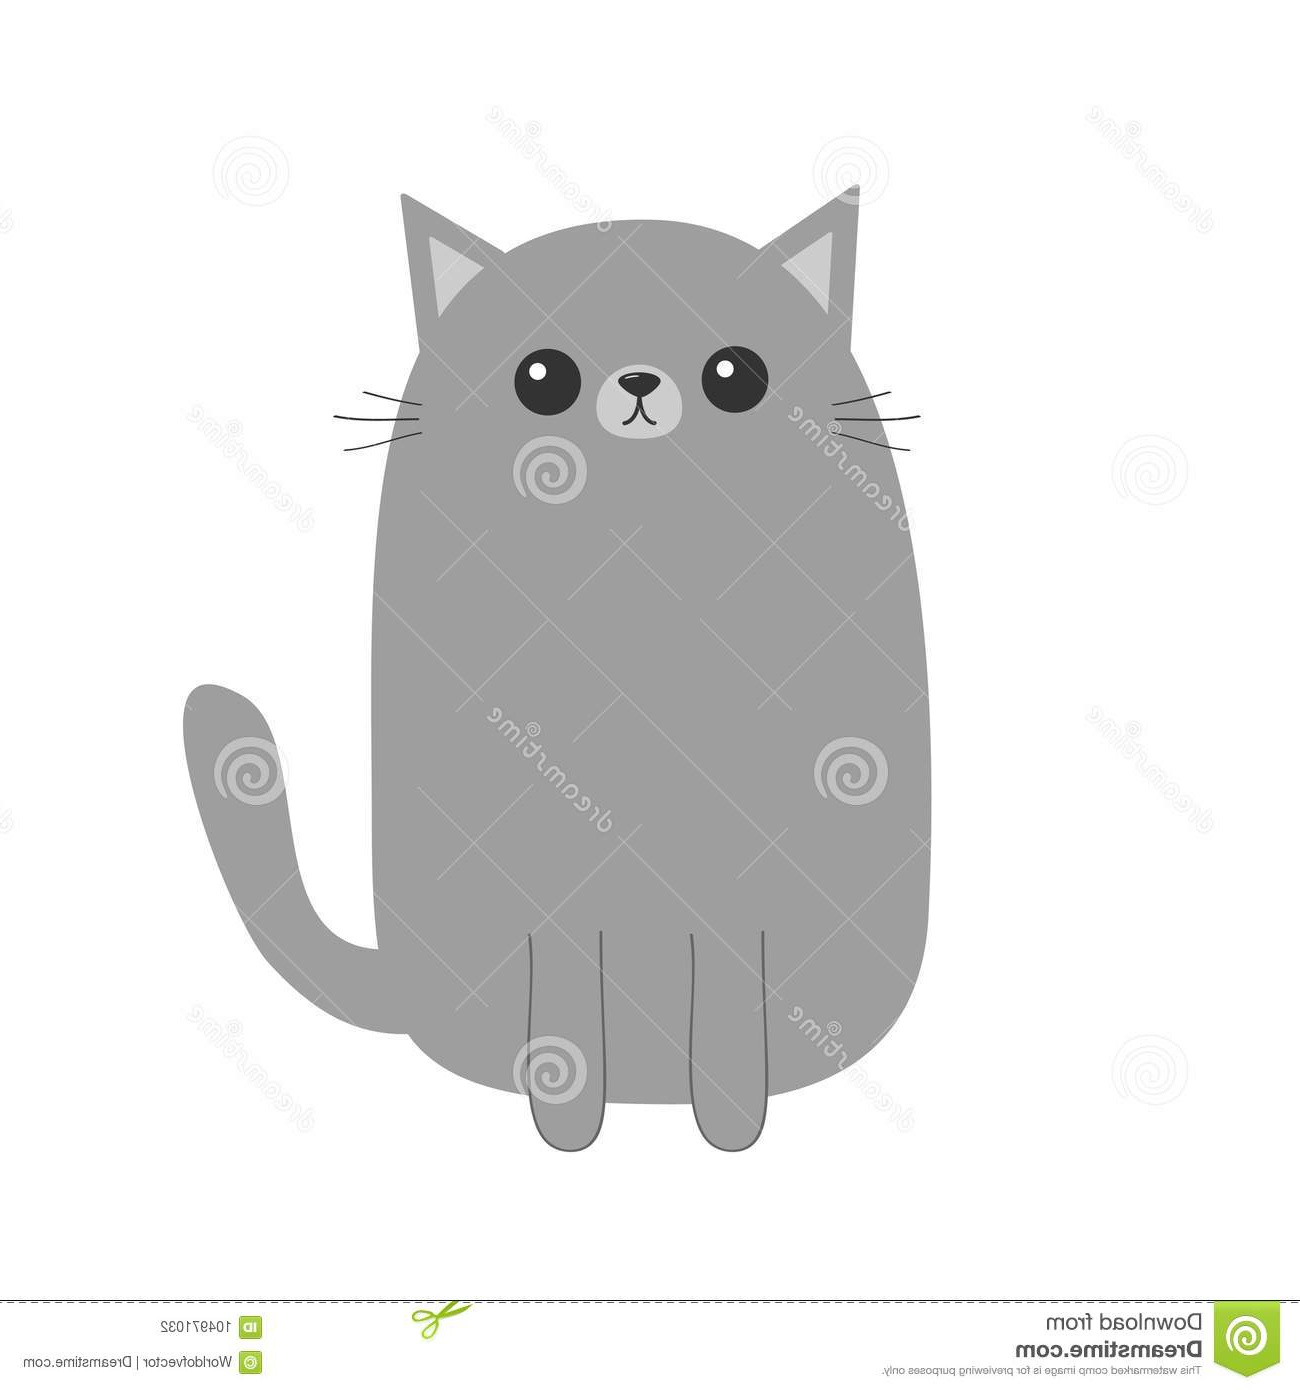 chaton gris de chat personnage dessin animé mignon animal kawaii visage drôle avec des yeux moustaches nez oreilles carte voeux image